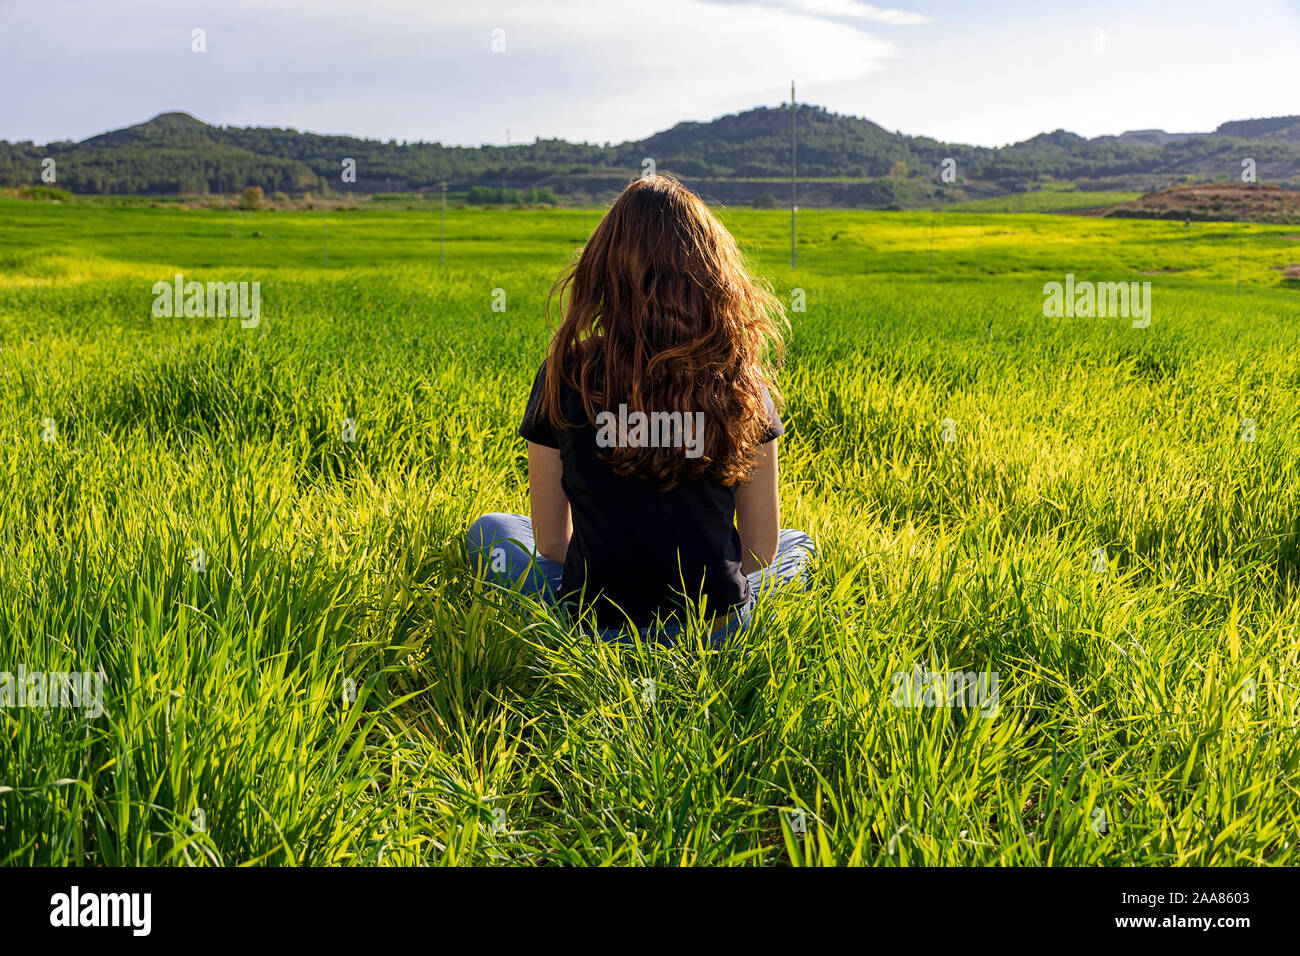 Junge kaukasier Frau rot - mit Sommersprossen blonde, ruht auf der grünen Wiese am Frühling Sonnenuntergang, sitzen in einem Yoga Position. Meditation, Achtsamkeit, entspannen Stockfoto